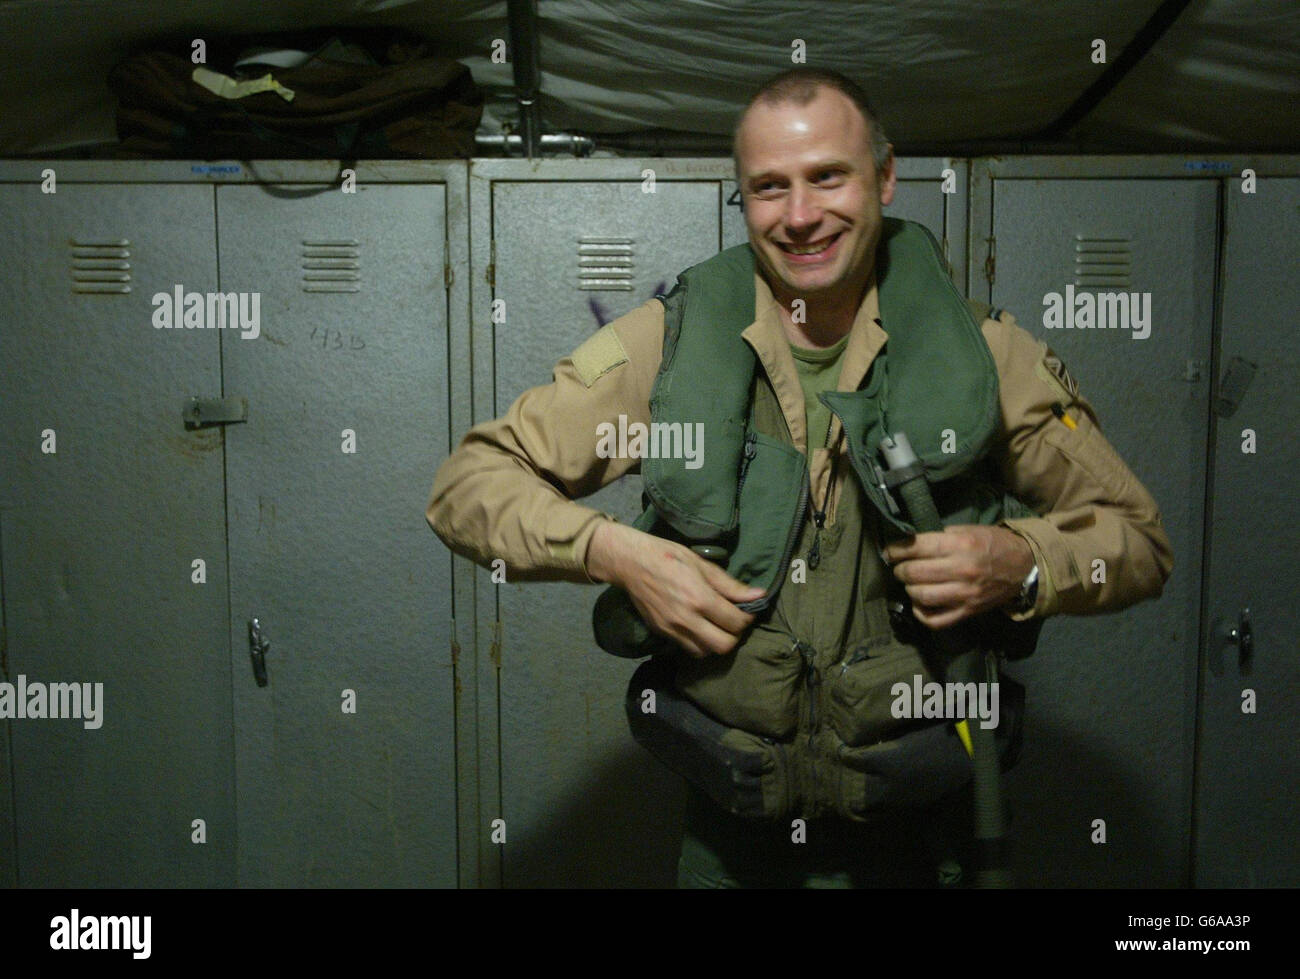 Der britische Royal Air Force Harrier GR7 Pilot Wing Commander Andy Suddards lächelt, als er sich auf seine Mission über den Irak auf seiner Basis in Kuwait vorbereitet. Piloten, die von Missionen über den Irak zurückkehren, melden keinen Widerstand in der Wüste und keine offensichtlichen Ziele. Stockfoto